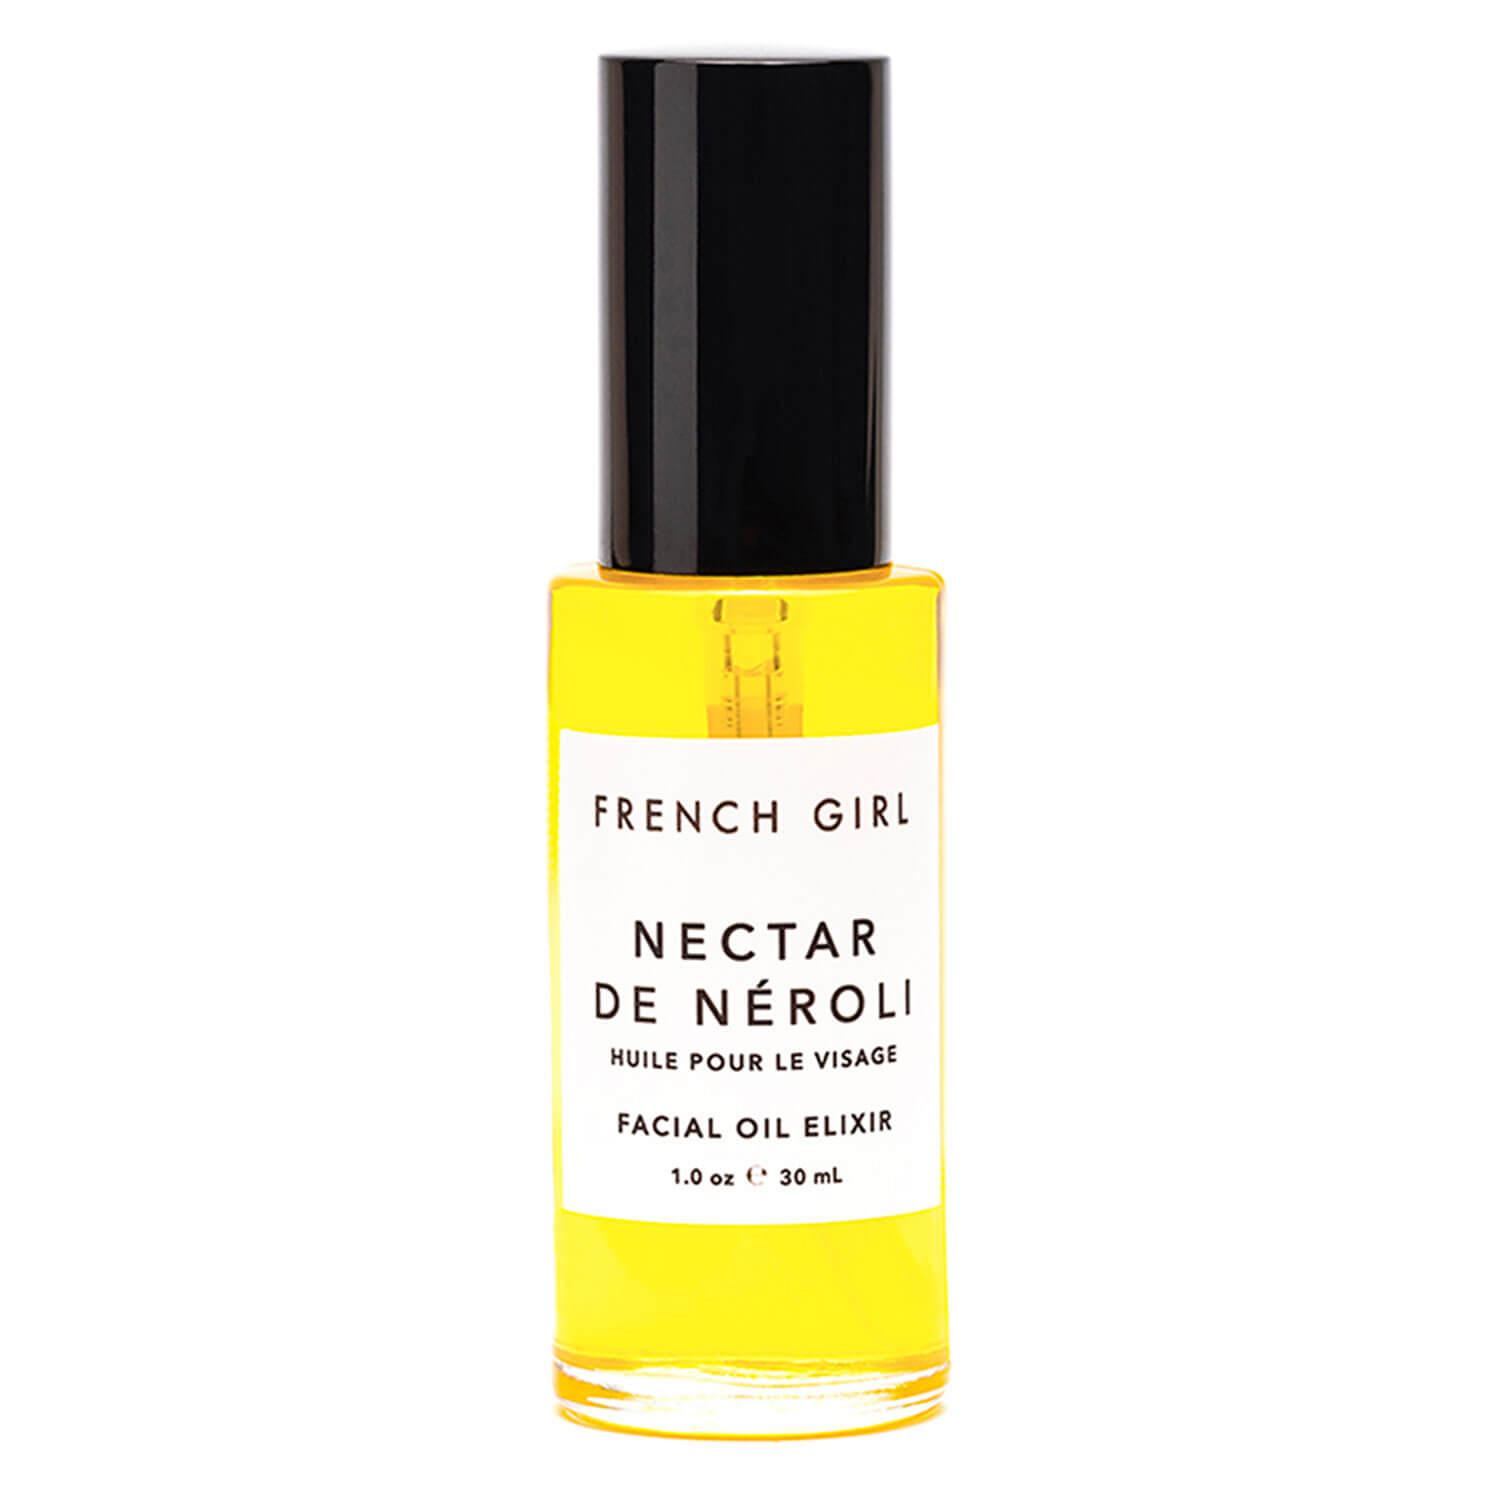 FRENCH GIRL - Nectar De Néroli Facial Oil Elixir